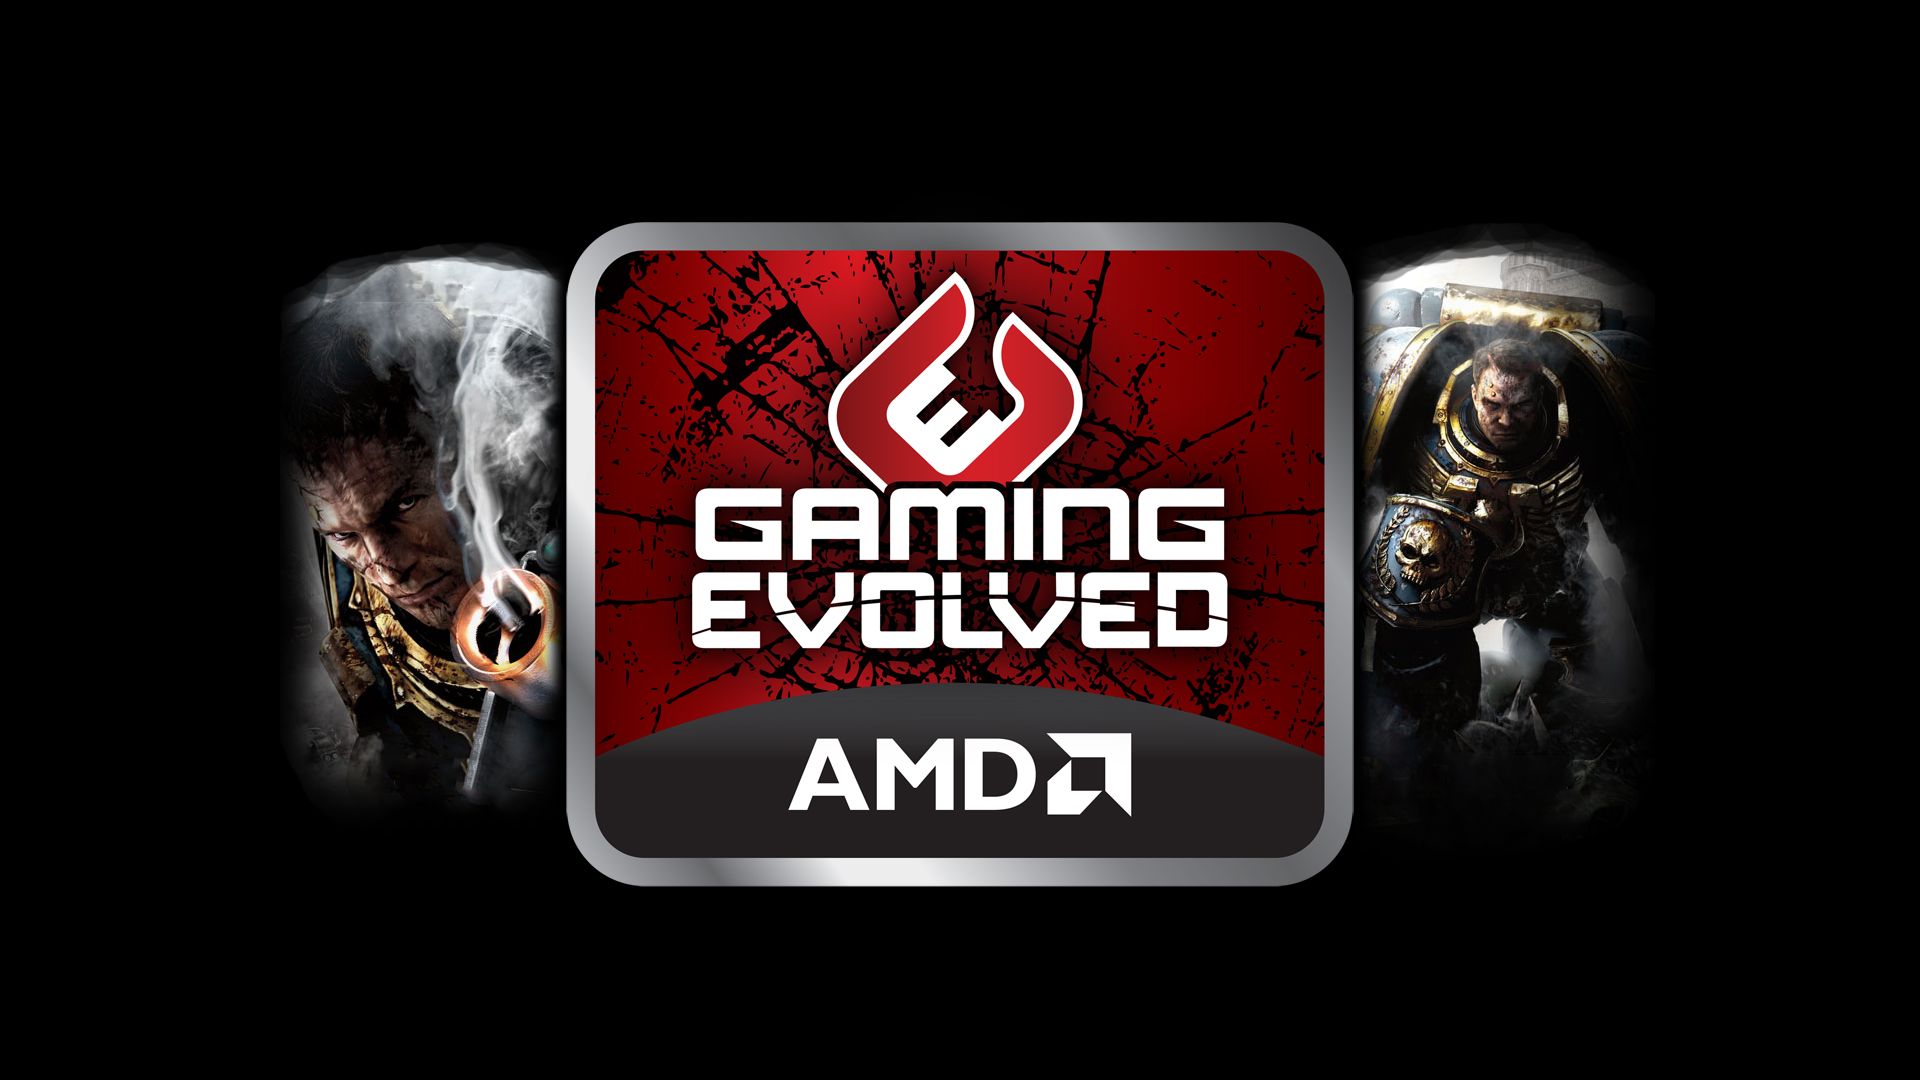 AMD Gaming Wallpaperwallpaperafari.com